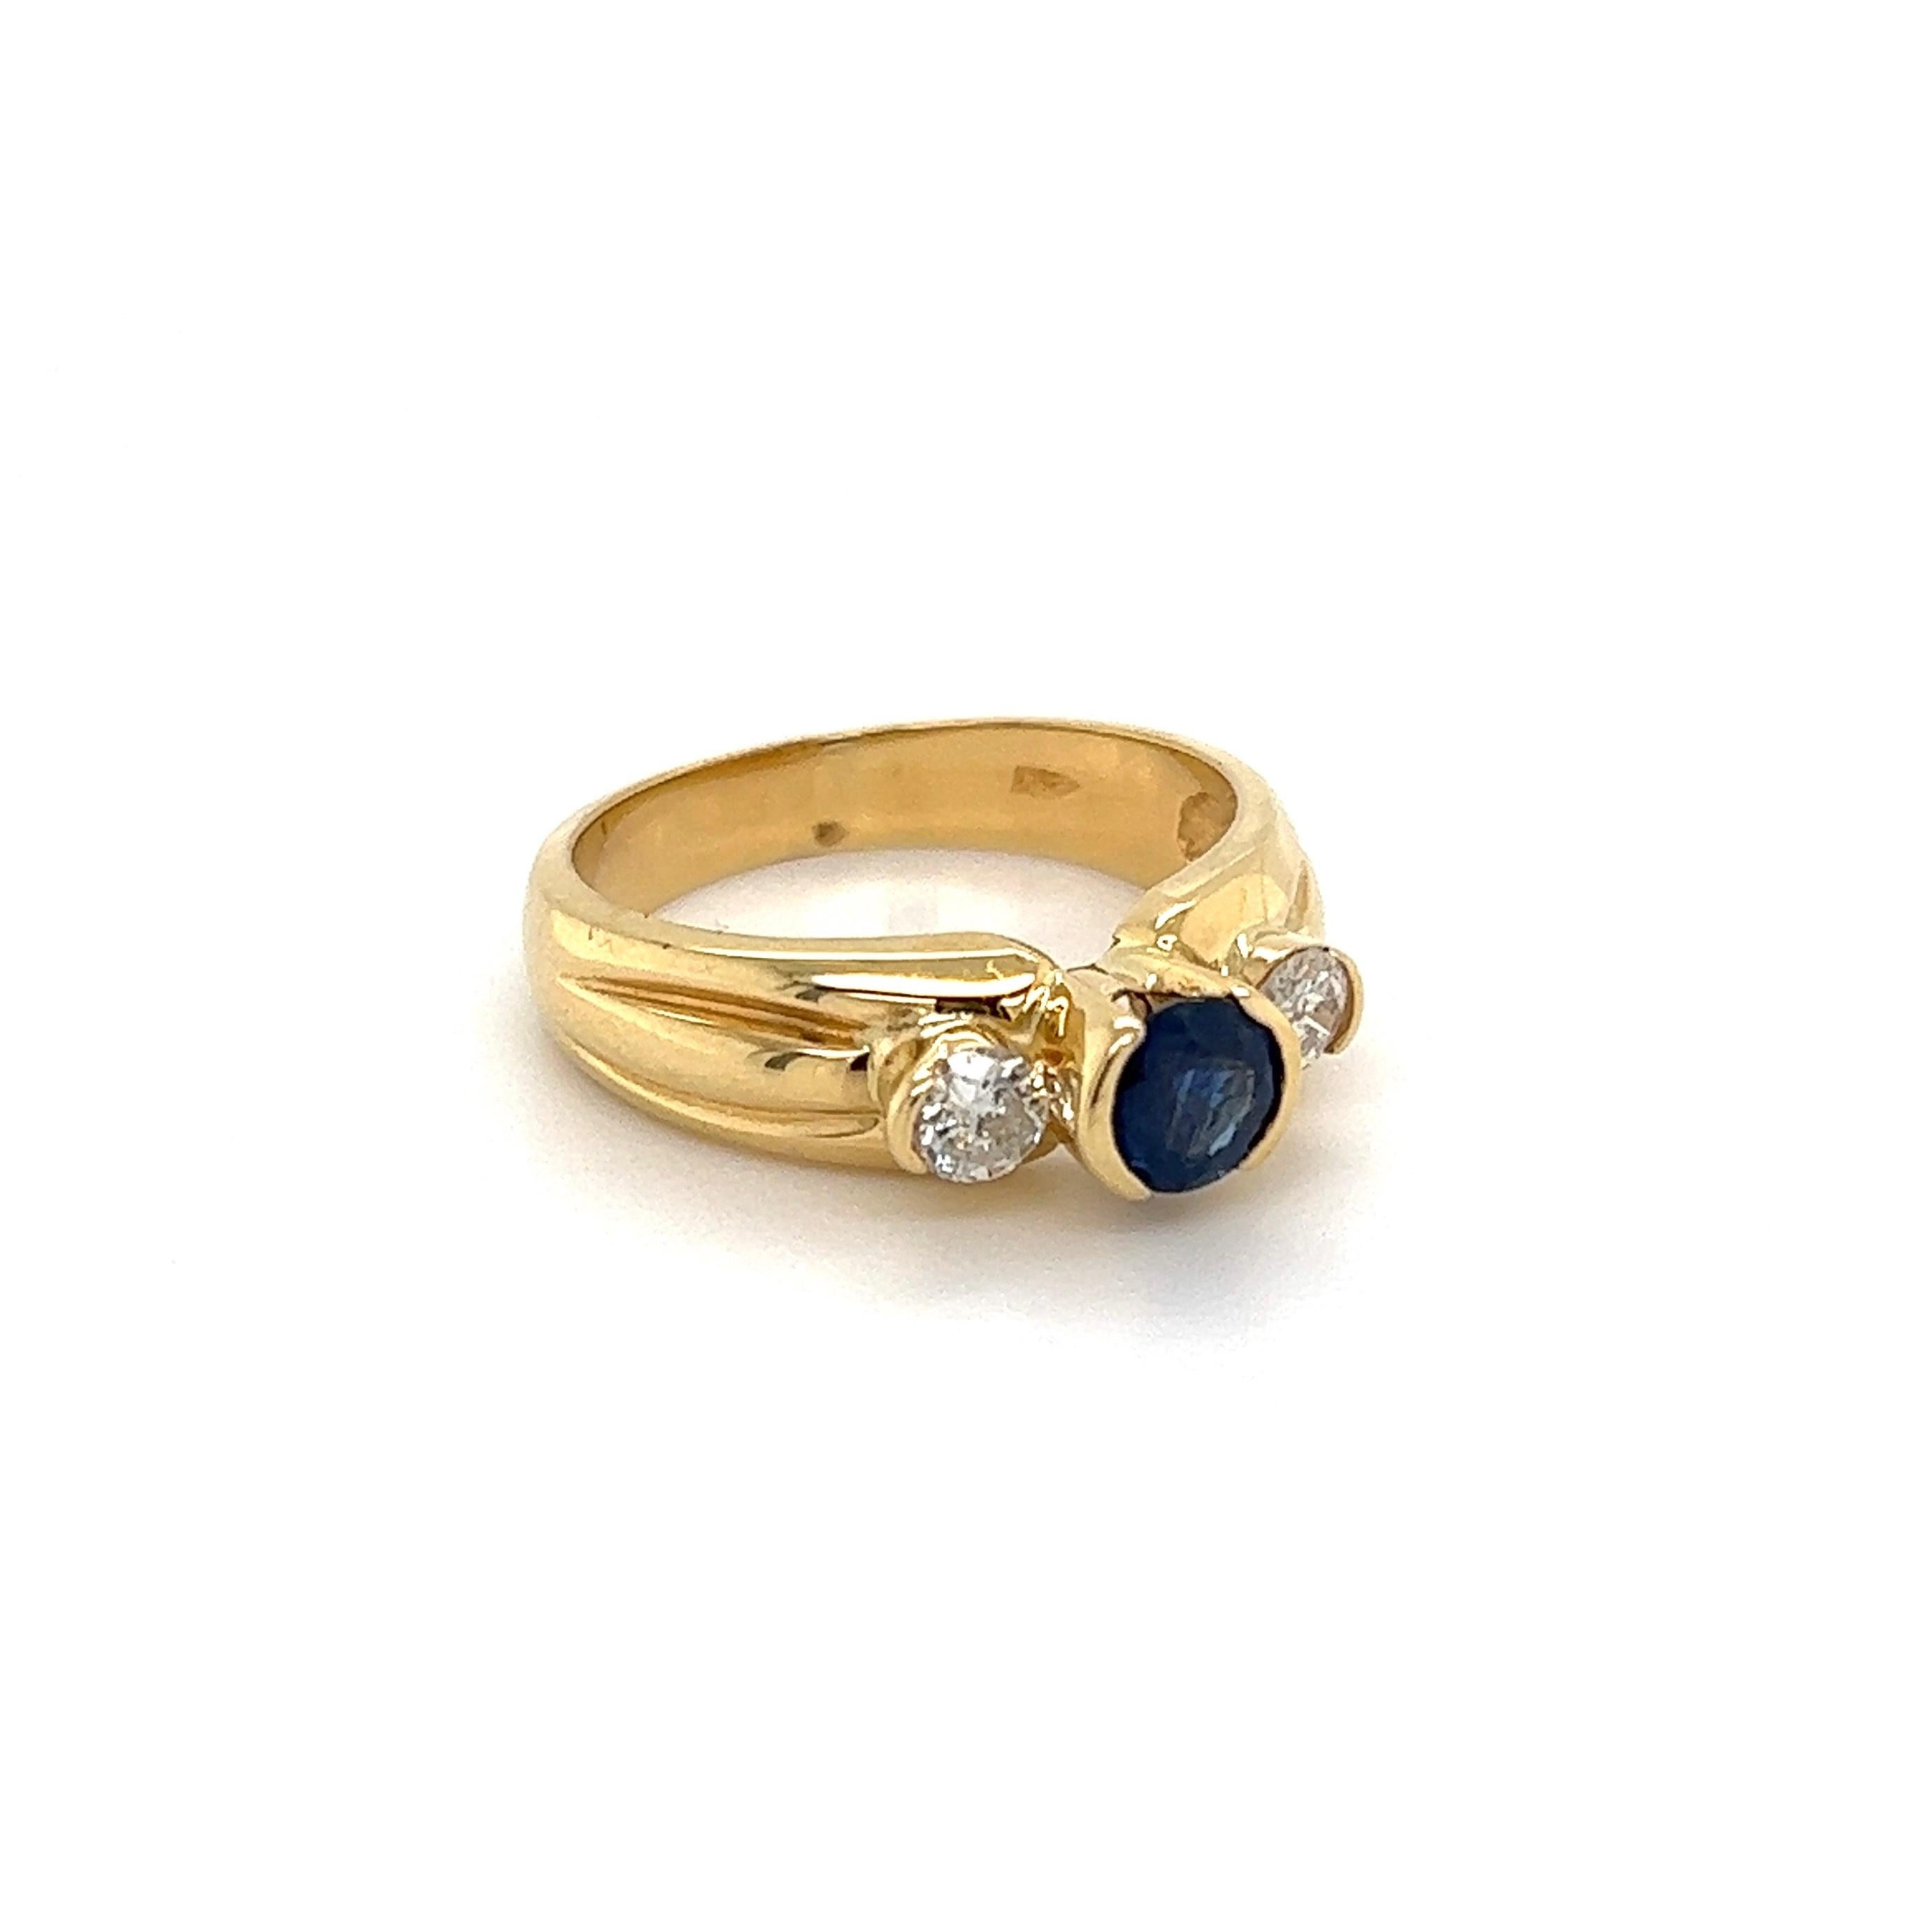 Schöne fein detaillierte Gold Drei-Stein-Blau Saphir und Diamant Trilogie Ring. Center sicher mit einer Hand gesetzt 0,50 Karat runden Saphir und 2 Diamanten ca. 0,30 tcw eingebettet. Handgefertigte Fassung aus 14K Gelbgold. Ungefähre Abmessungen: